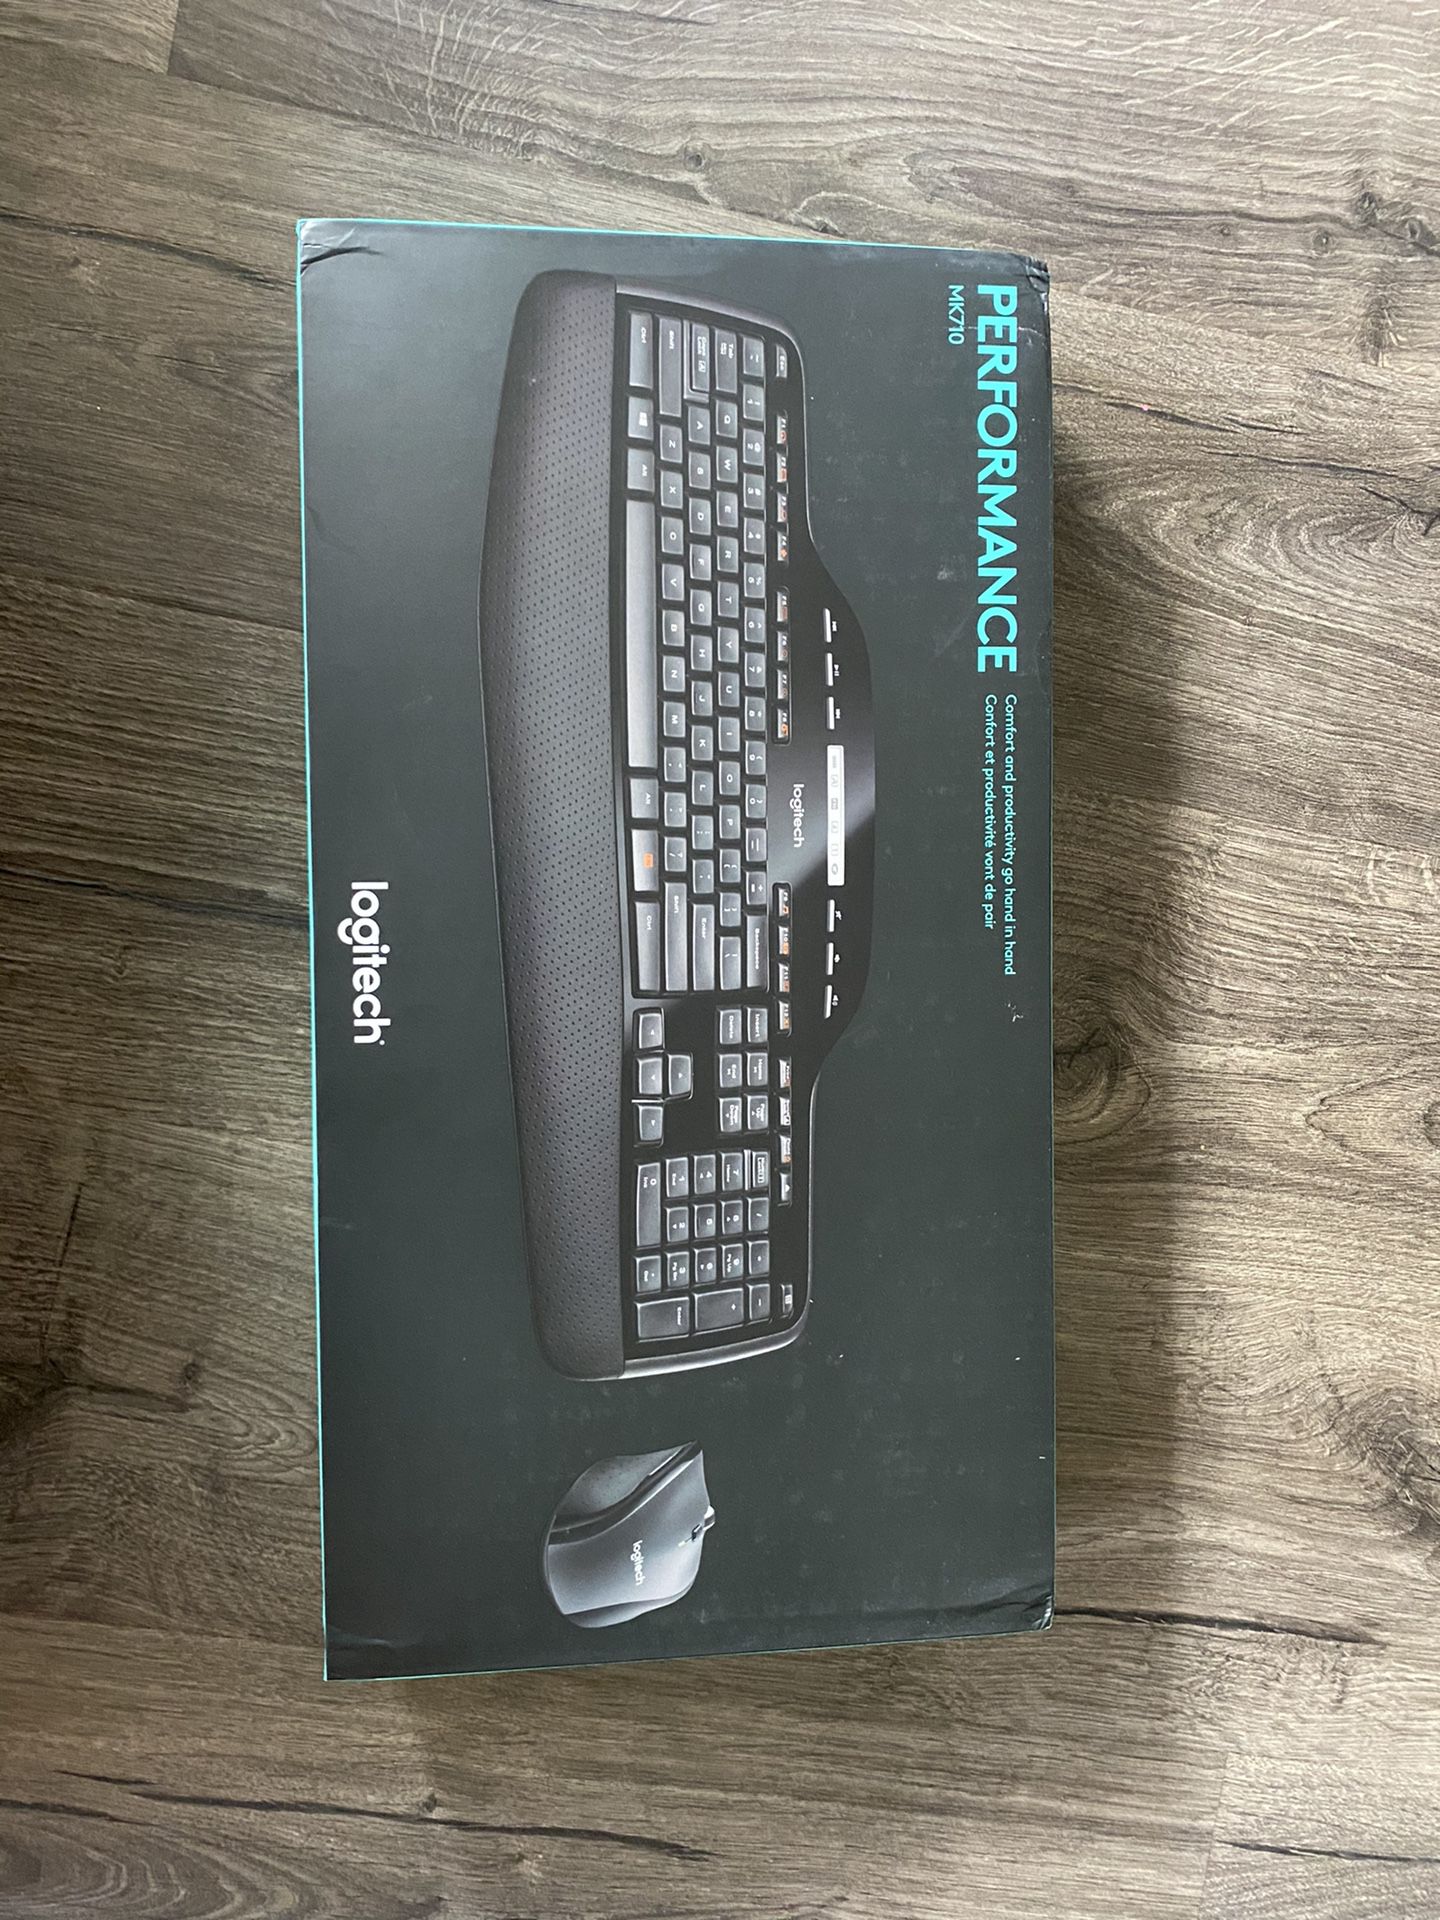 Wireless keyboard/mouse